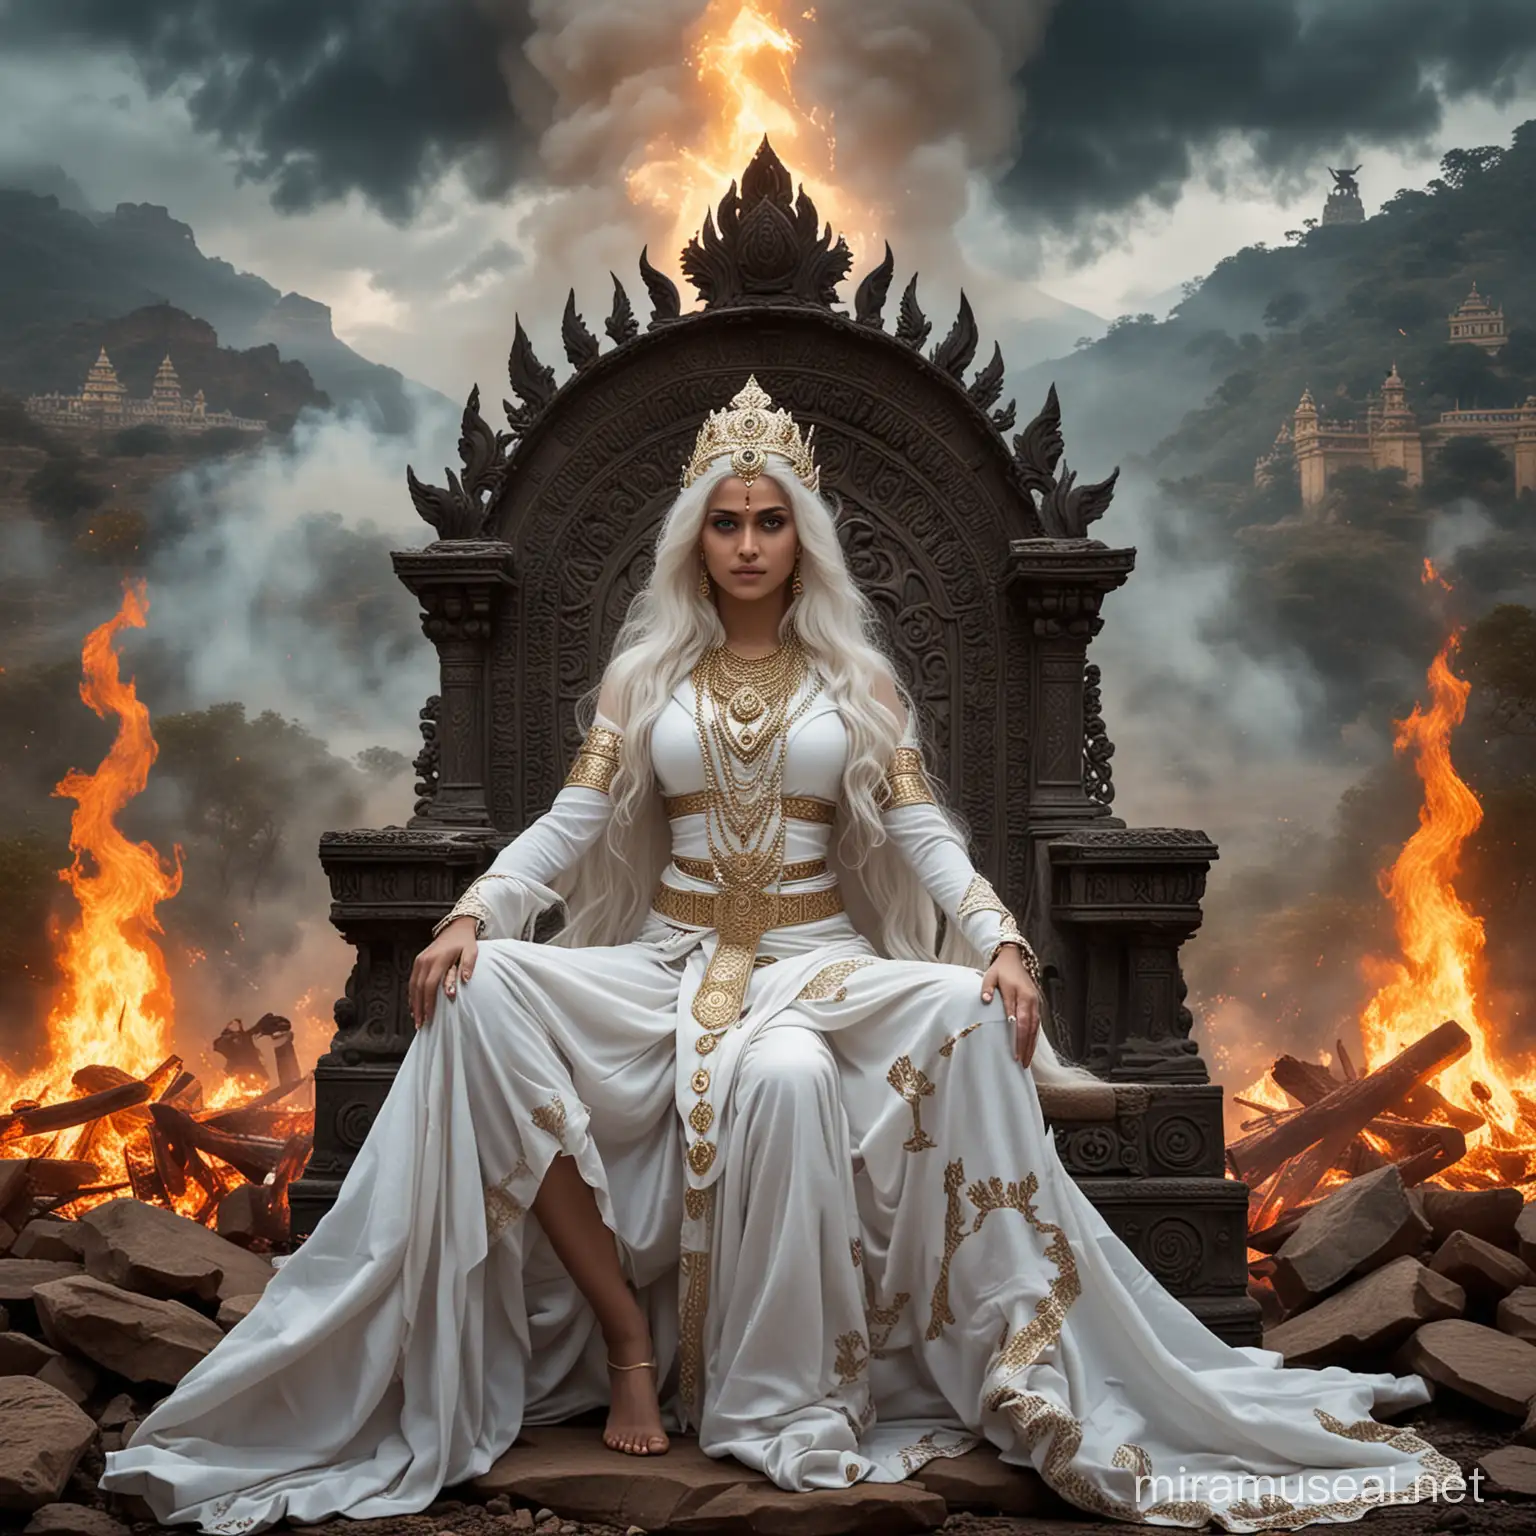 Diosa emperatriz hindu joven de cabellos blancos largos y ojos azules vestida de diosa emperatriz hindu en combate sentada en un trono majestuoso rodeada de fuego y de diosas hindus demoníacas y de fondo un valle tenebroso y un palacio hindu tenebroso y la palabra kayashiel emperatriz escrita con letras de fuego 